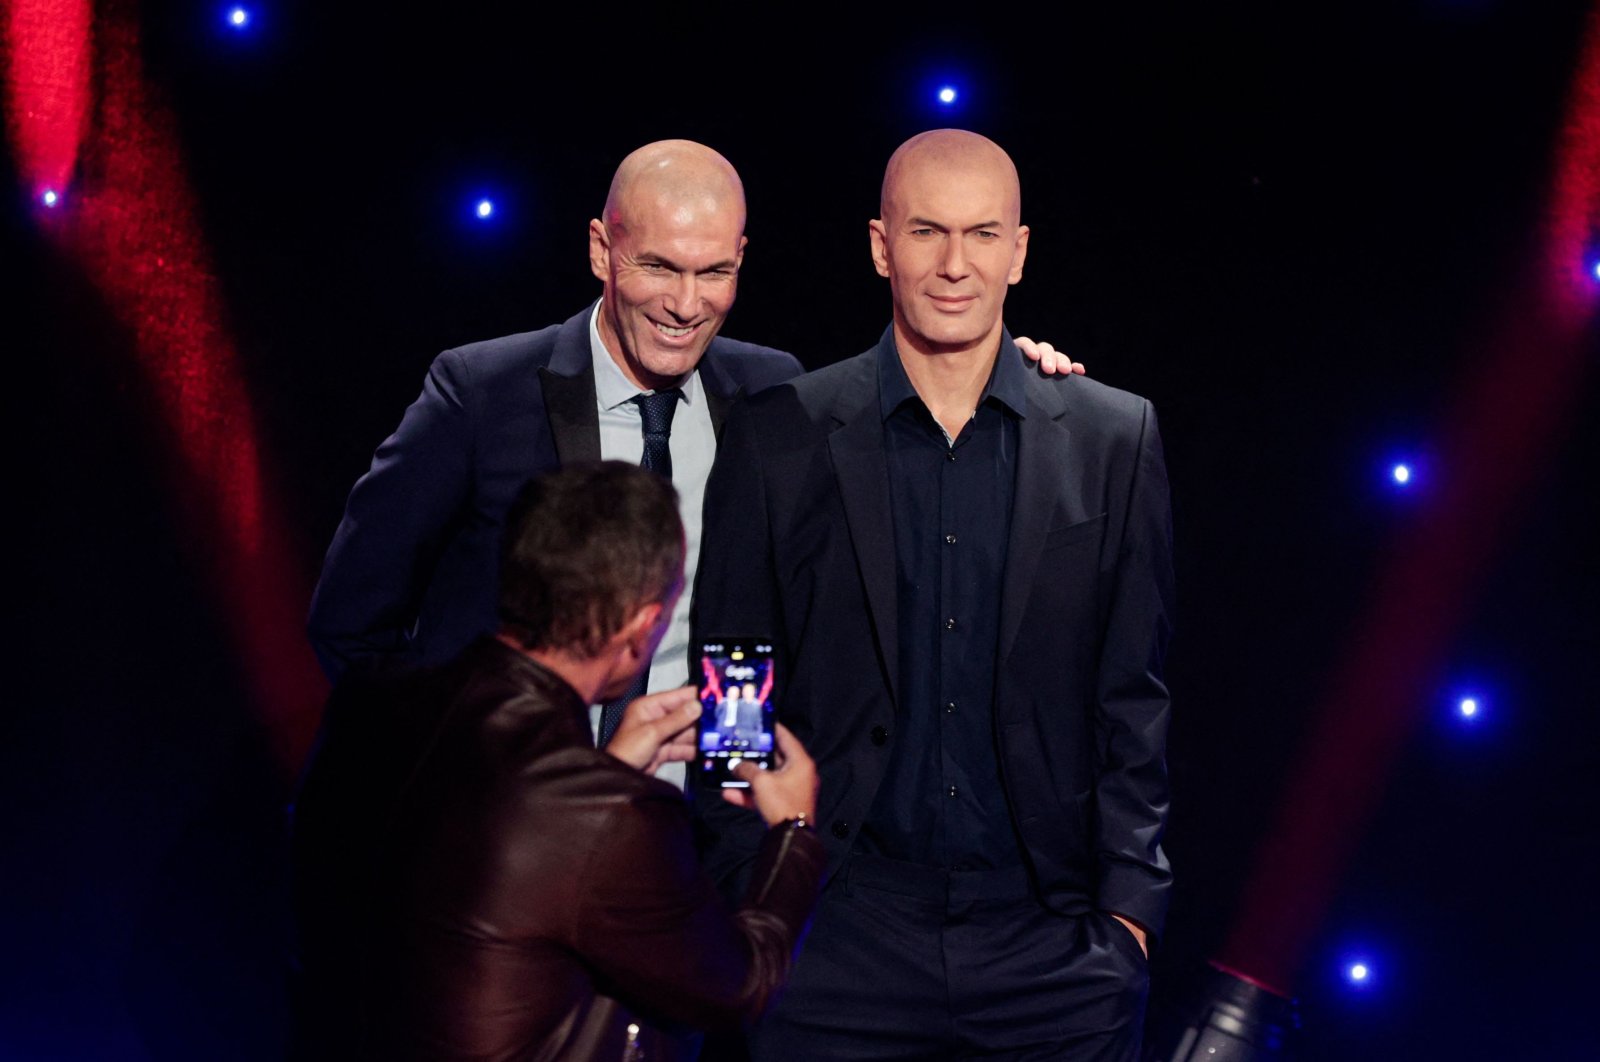 Zidane mendesak para penggemar untuk melupakan kontroversi, fokus pada sepak bola